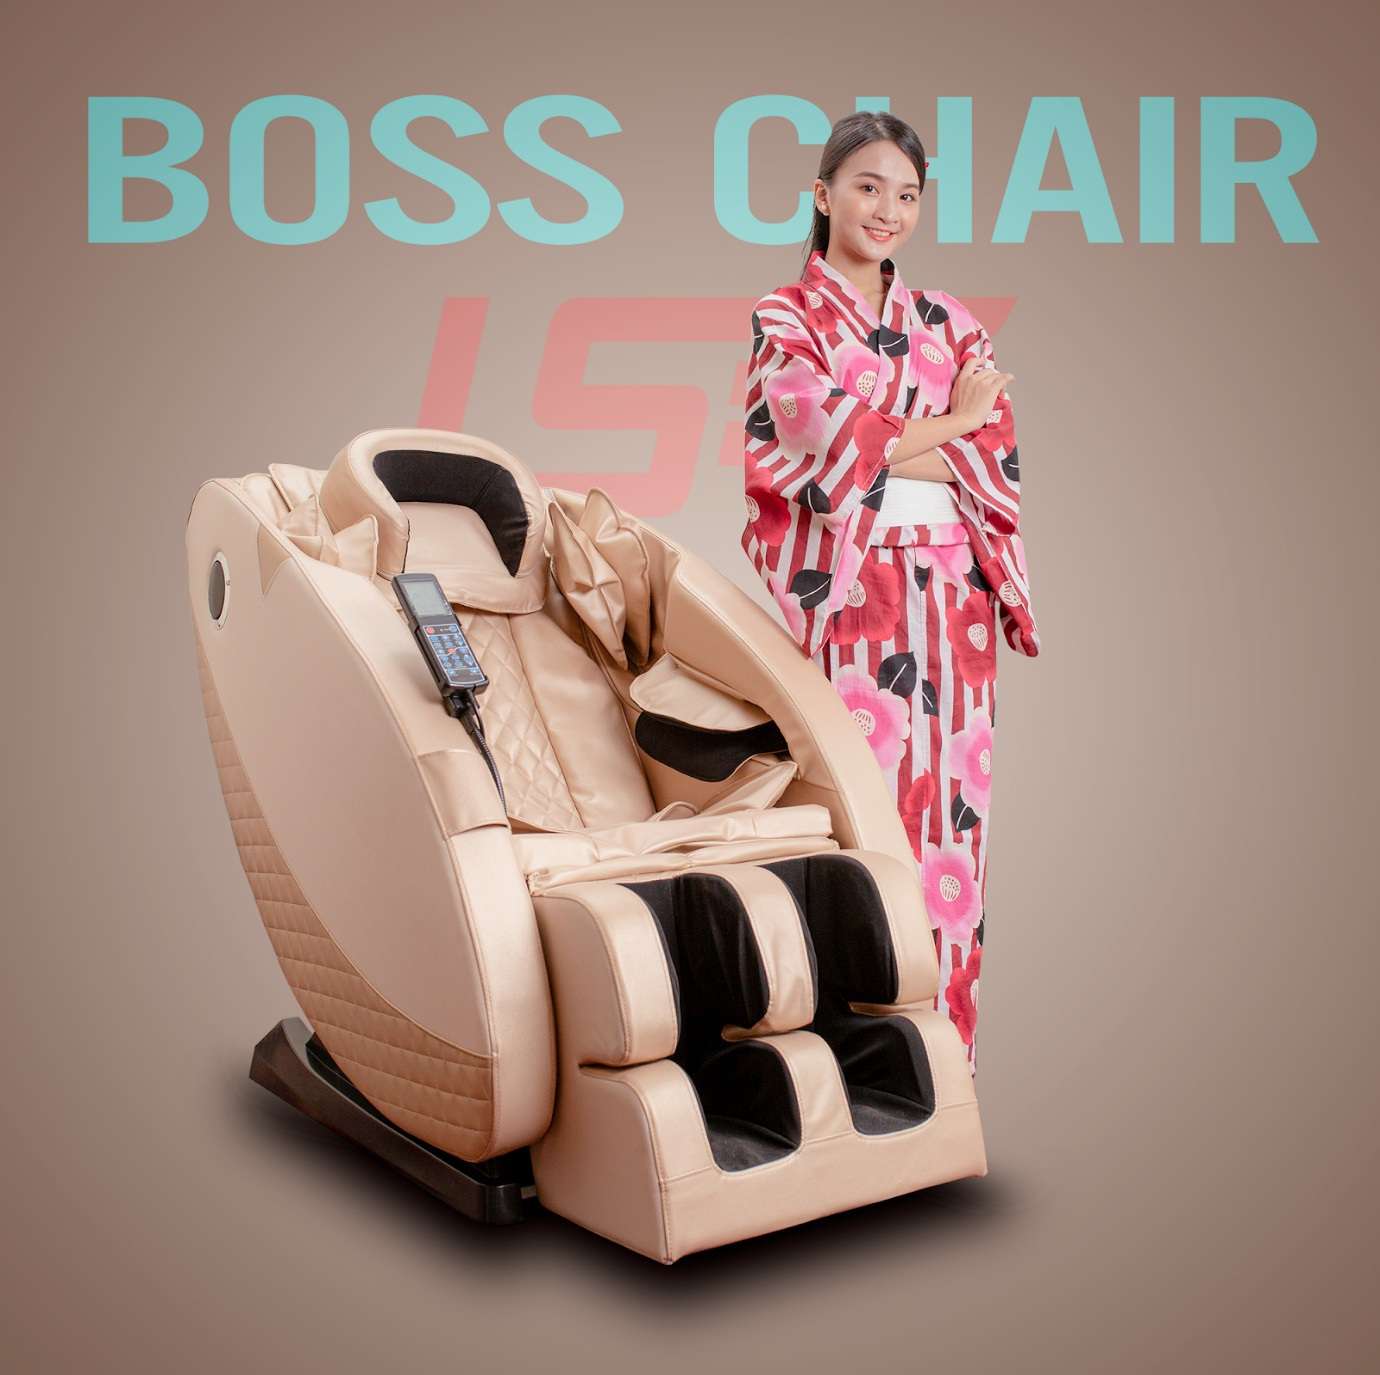 Ghế massage Boss Chair - sức khỏe trọn vẹn cho mọi gia đình - 4